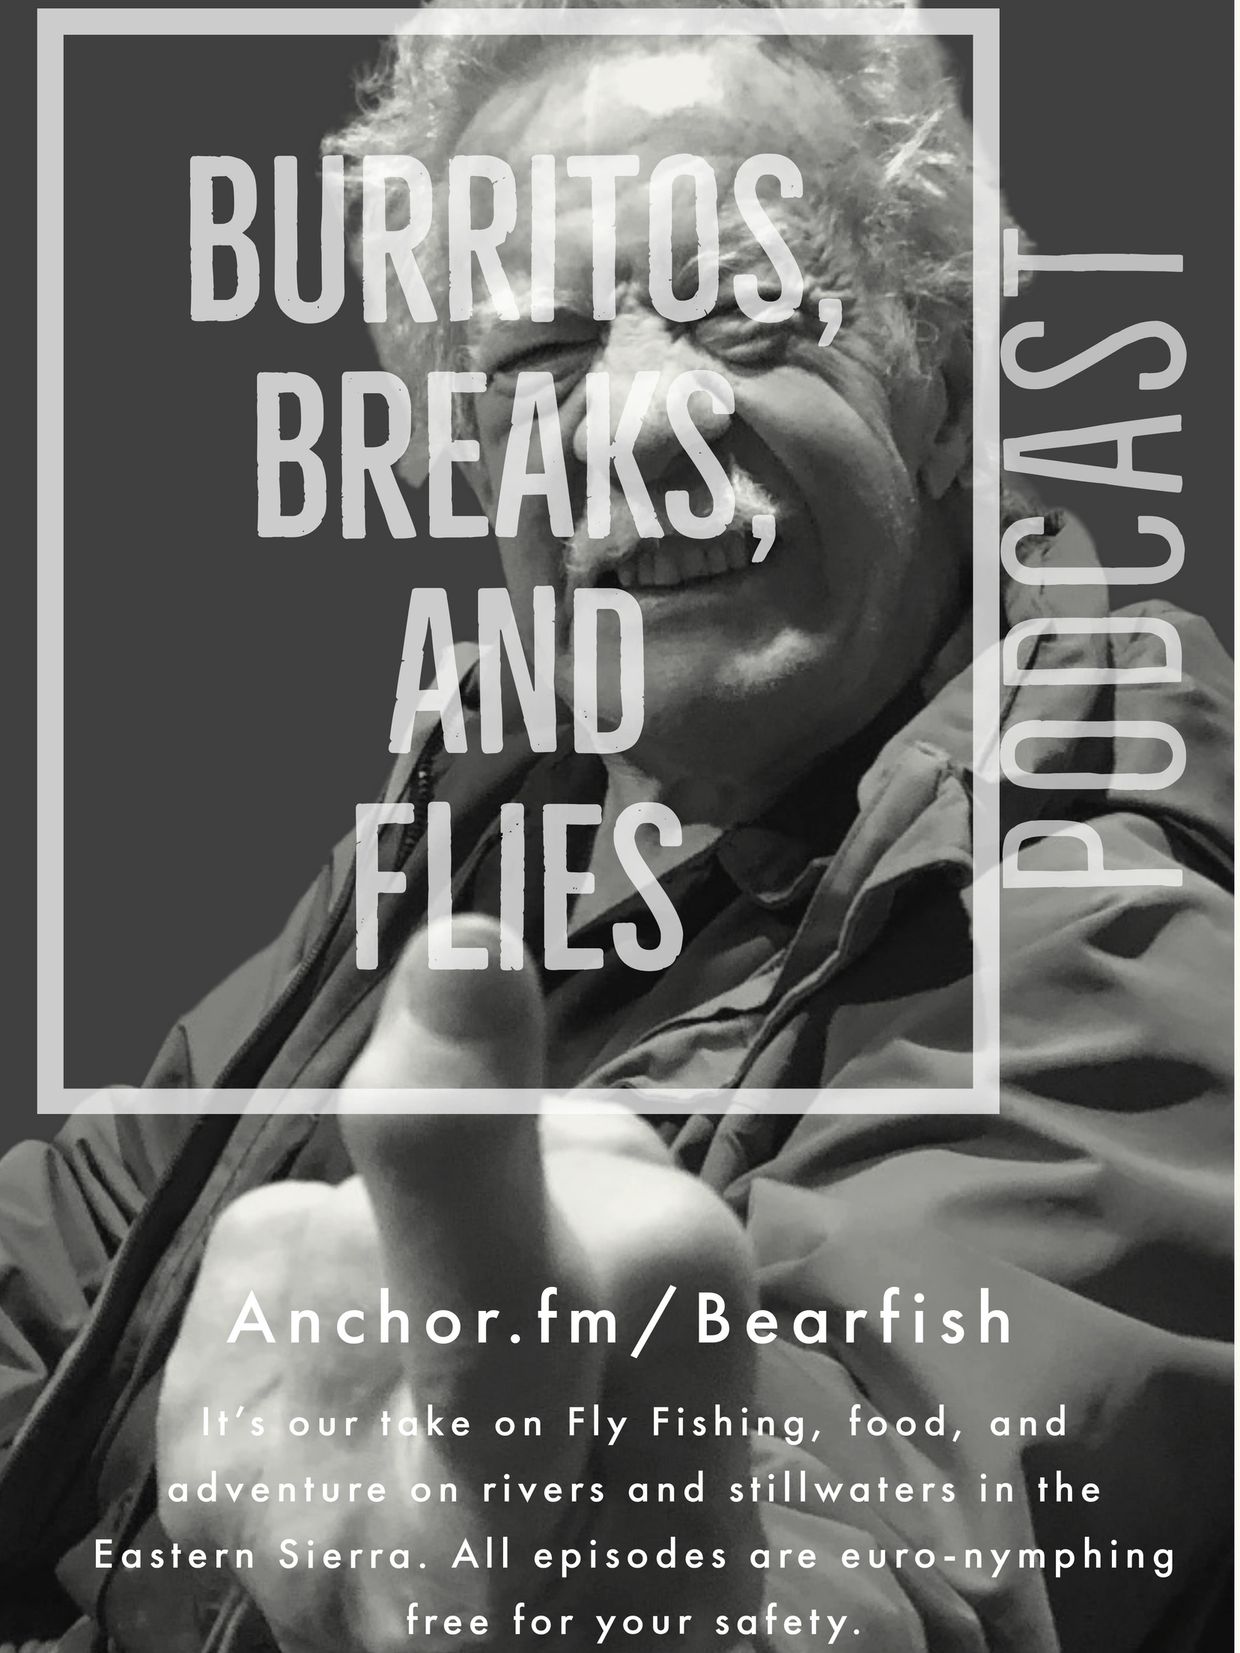 Bearfishalliance - Podcast, Best Podcasts, Podcast, Flyfishing